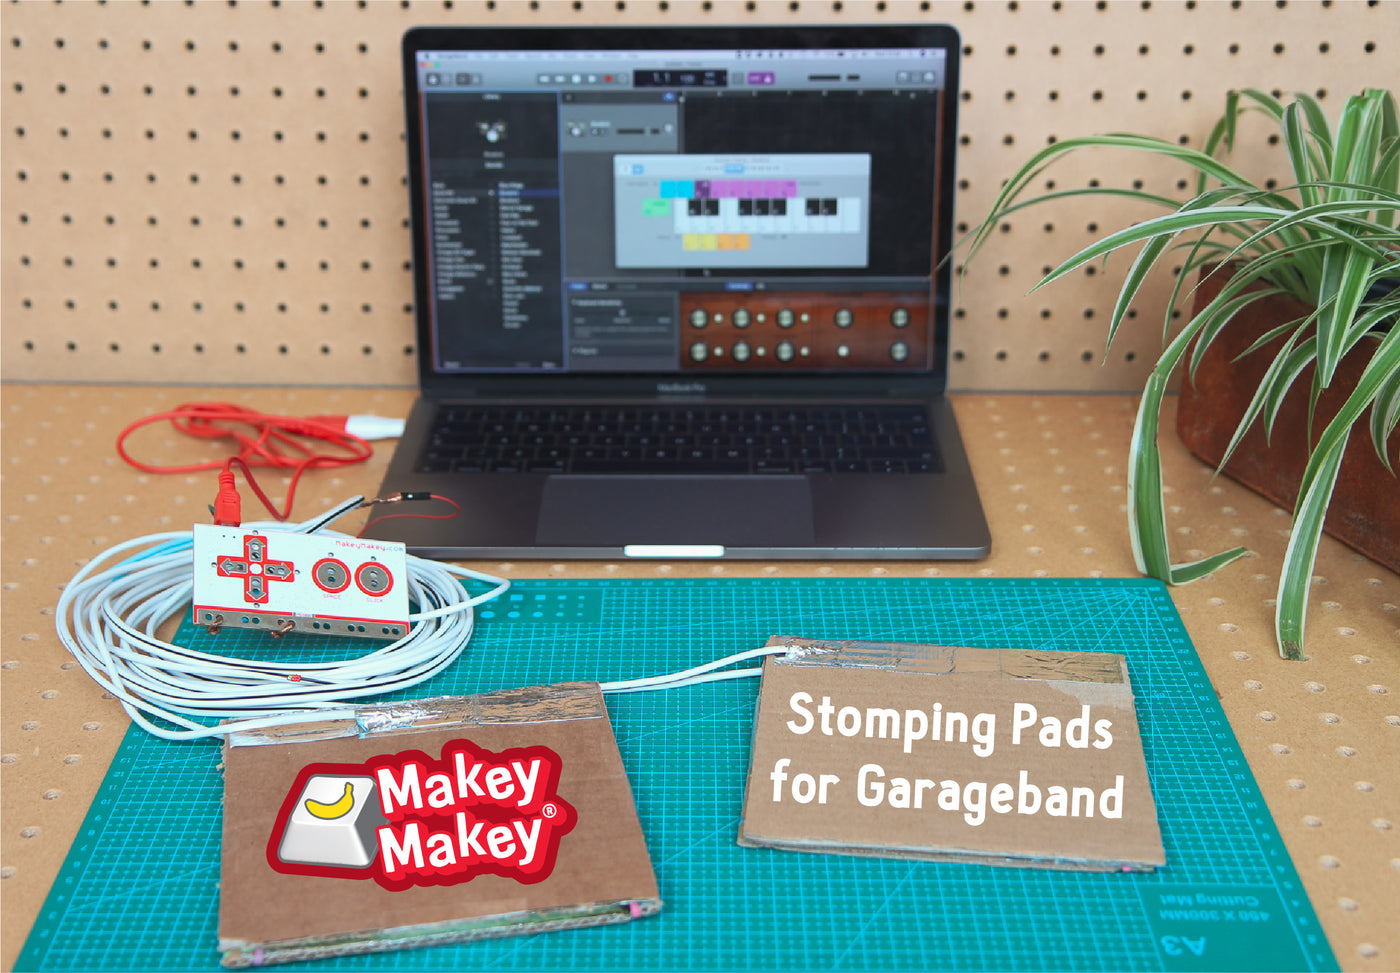 Garageband and Makey Makey Stomping Pads by Frazer Merrick